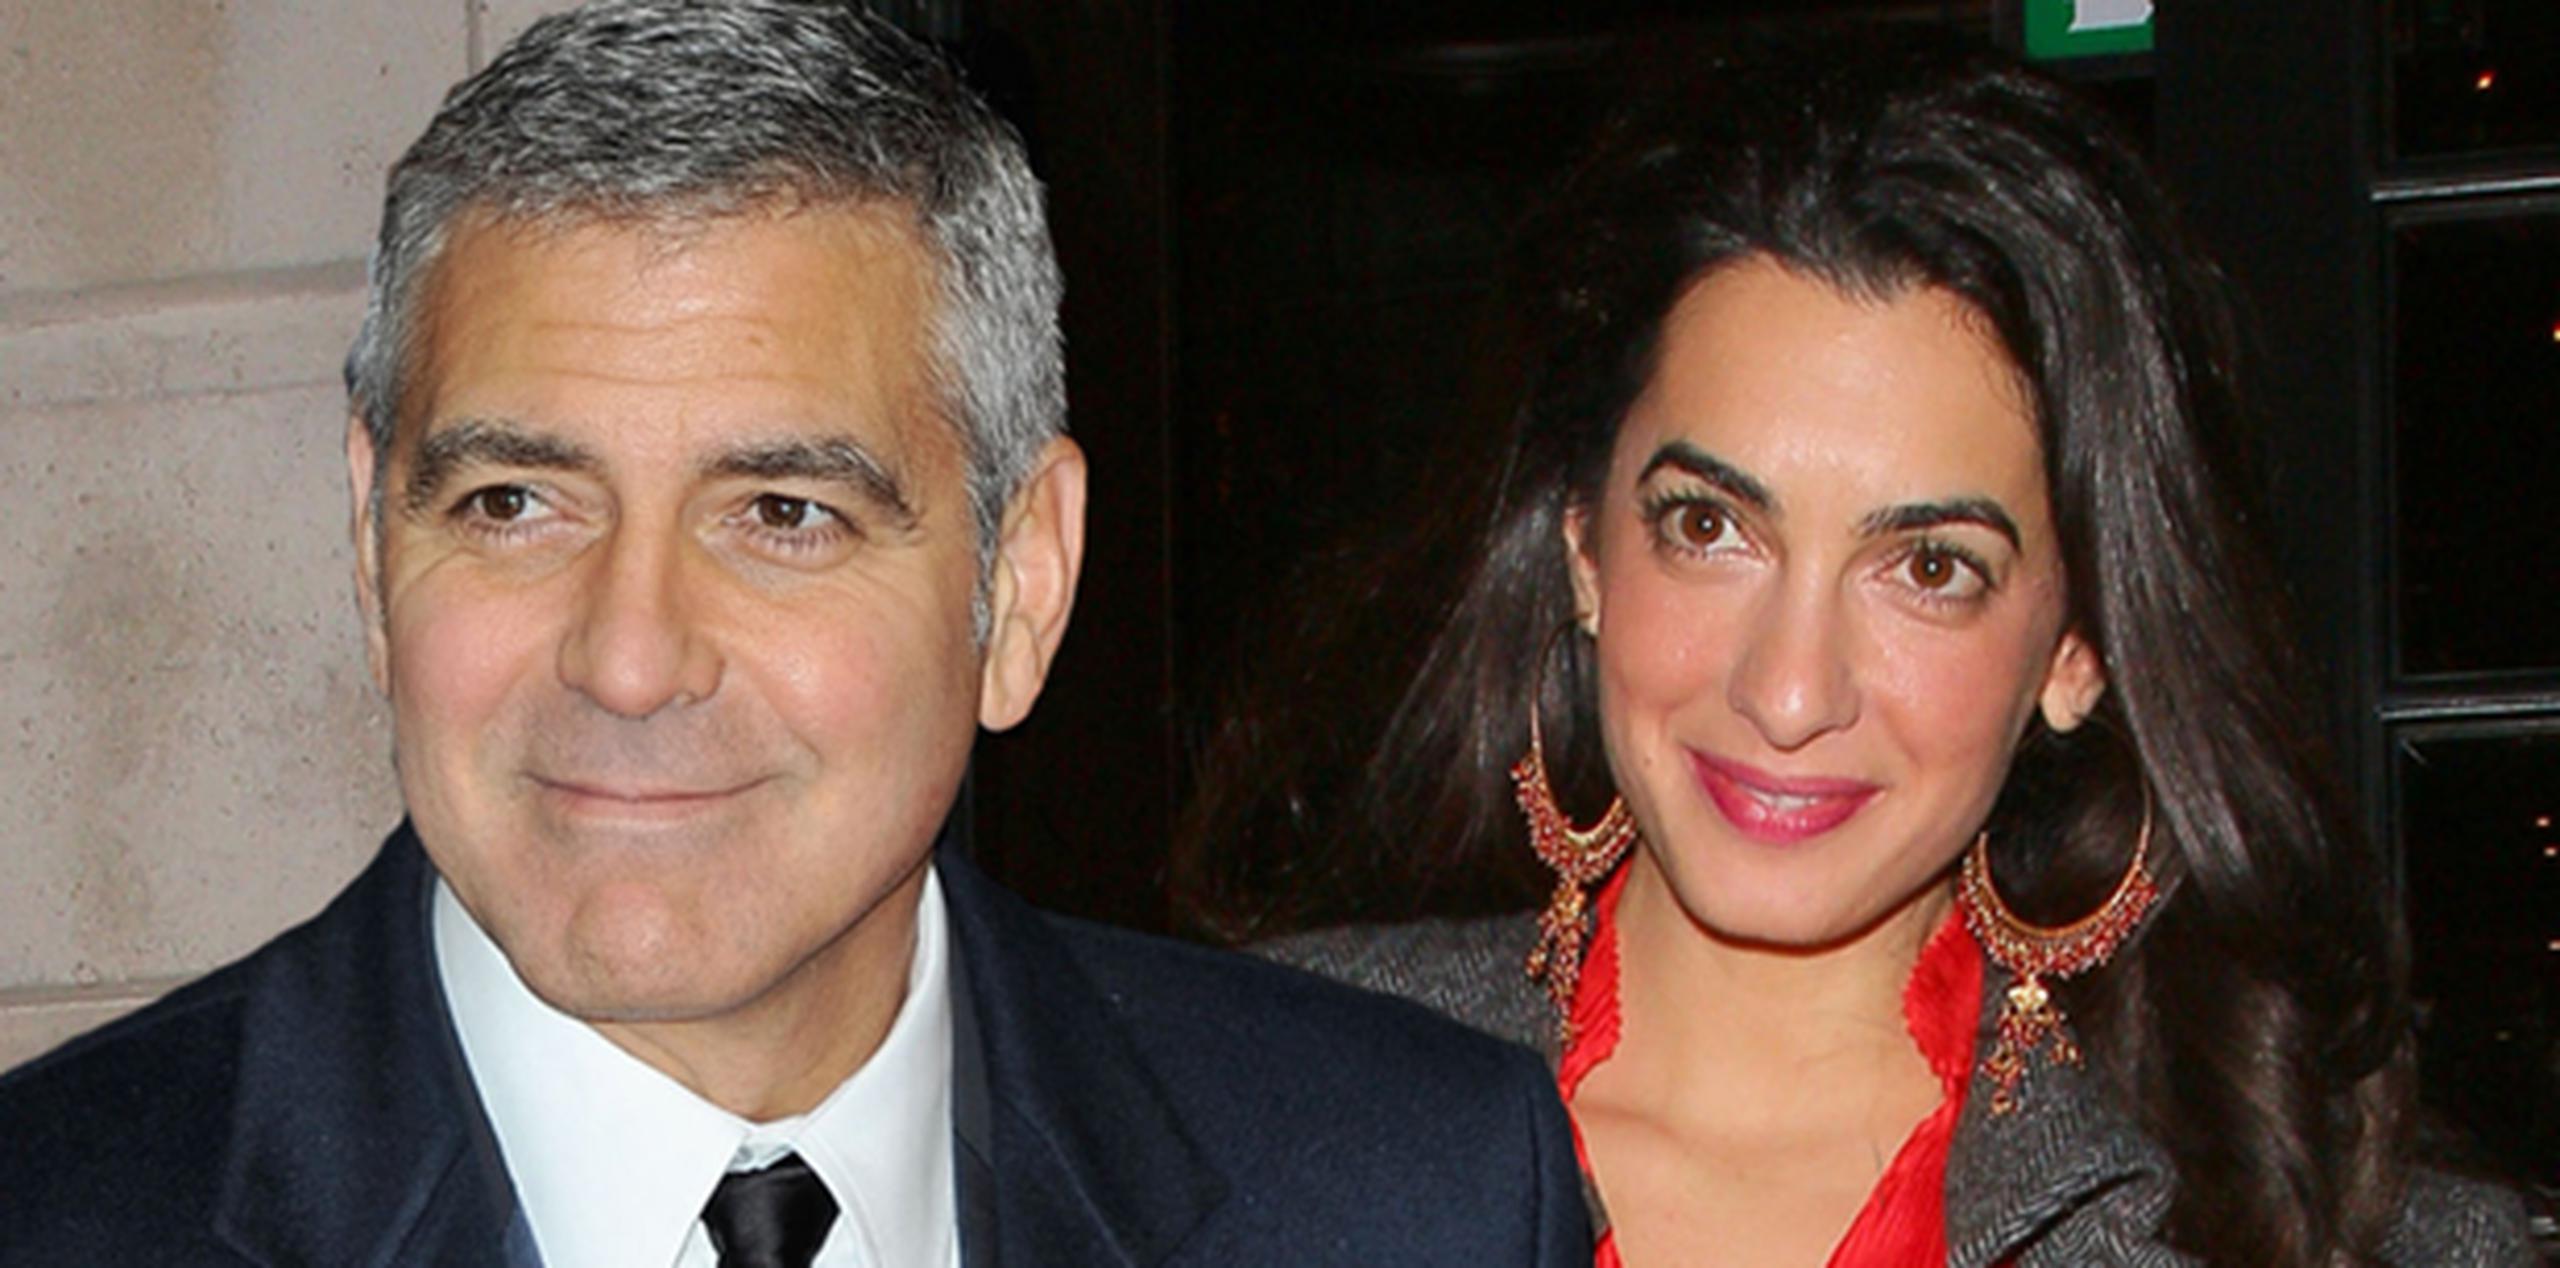 Clooney, que declaró su amor a la abogada Amal Alamuddin y su deseo de casarse en Italia durante un evento en Florencia, ya se encuentra en Venecia, mientras que a la futura esposa se le ha visto en Milán. (Archivo)